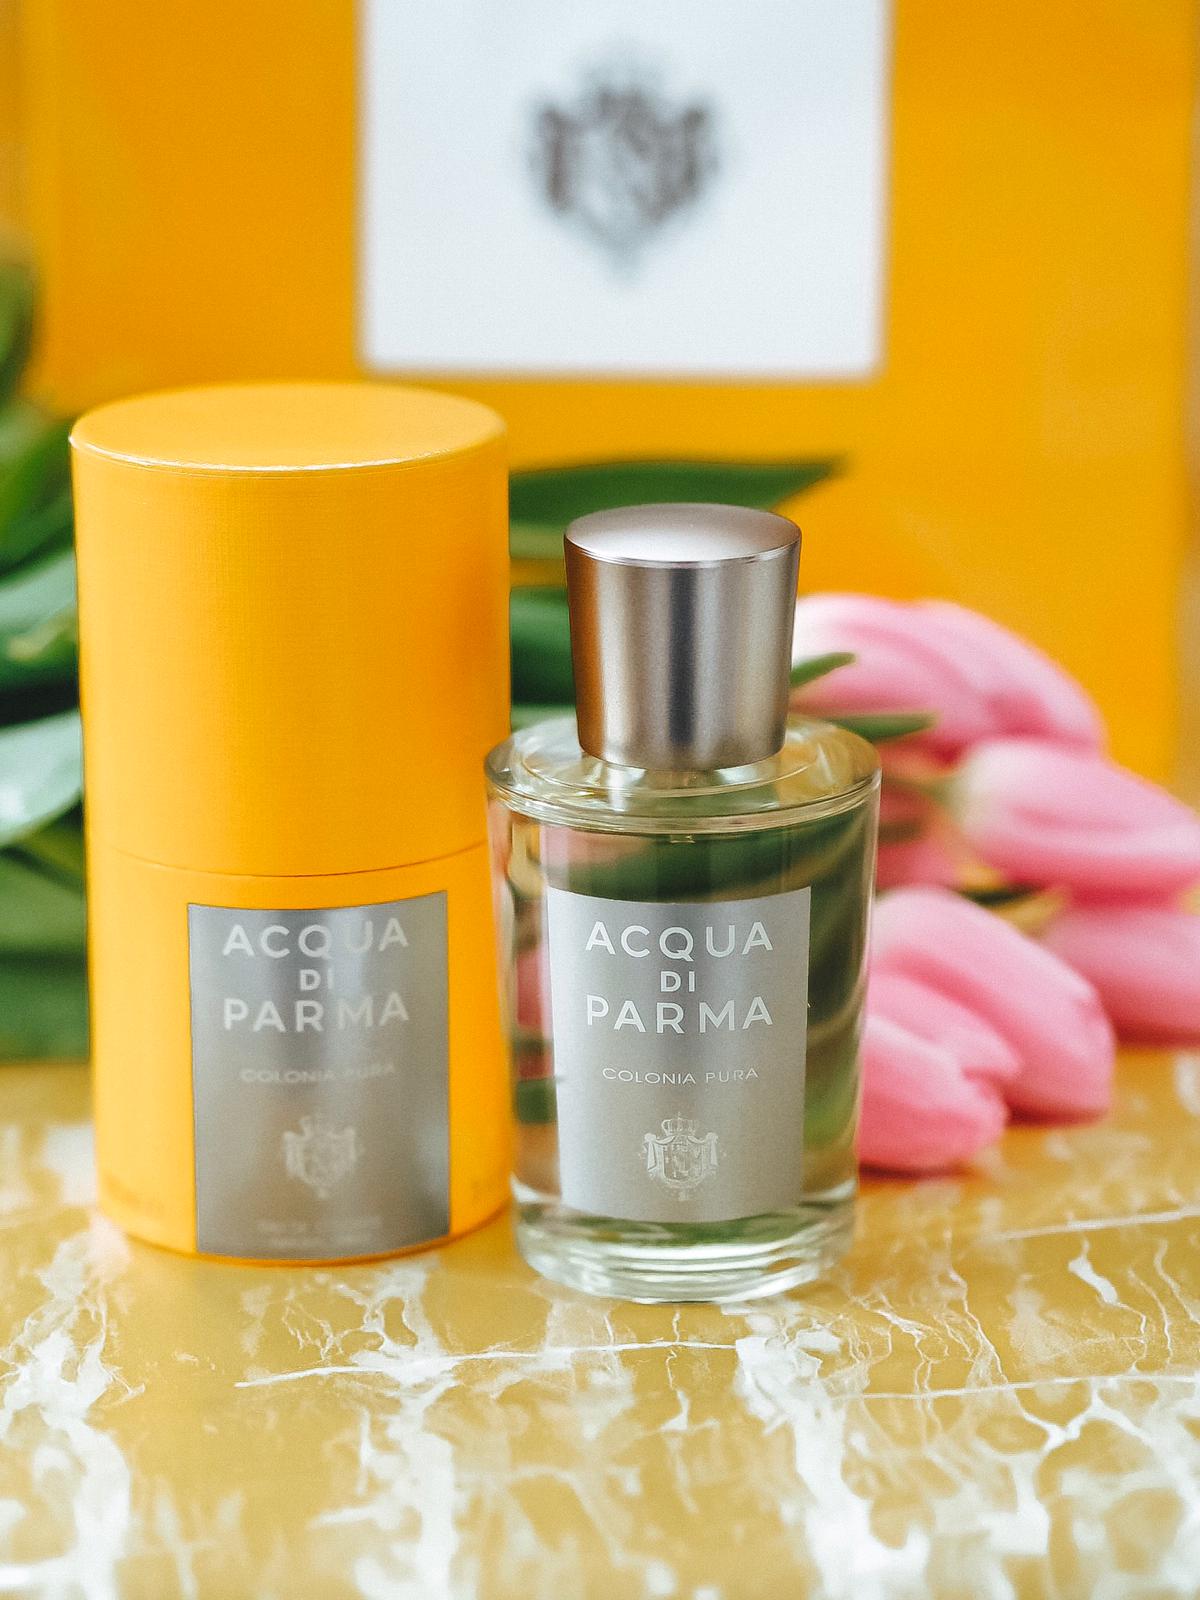 Tolle Düfte von Acqua di Parma könnt ihr bei Douglas kaufen. Heute stelle ich auf dem Beauty Blog meine 3 liebten Parfums der edlen Marke ausführlich vor.